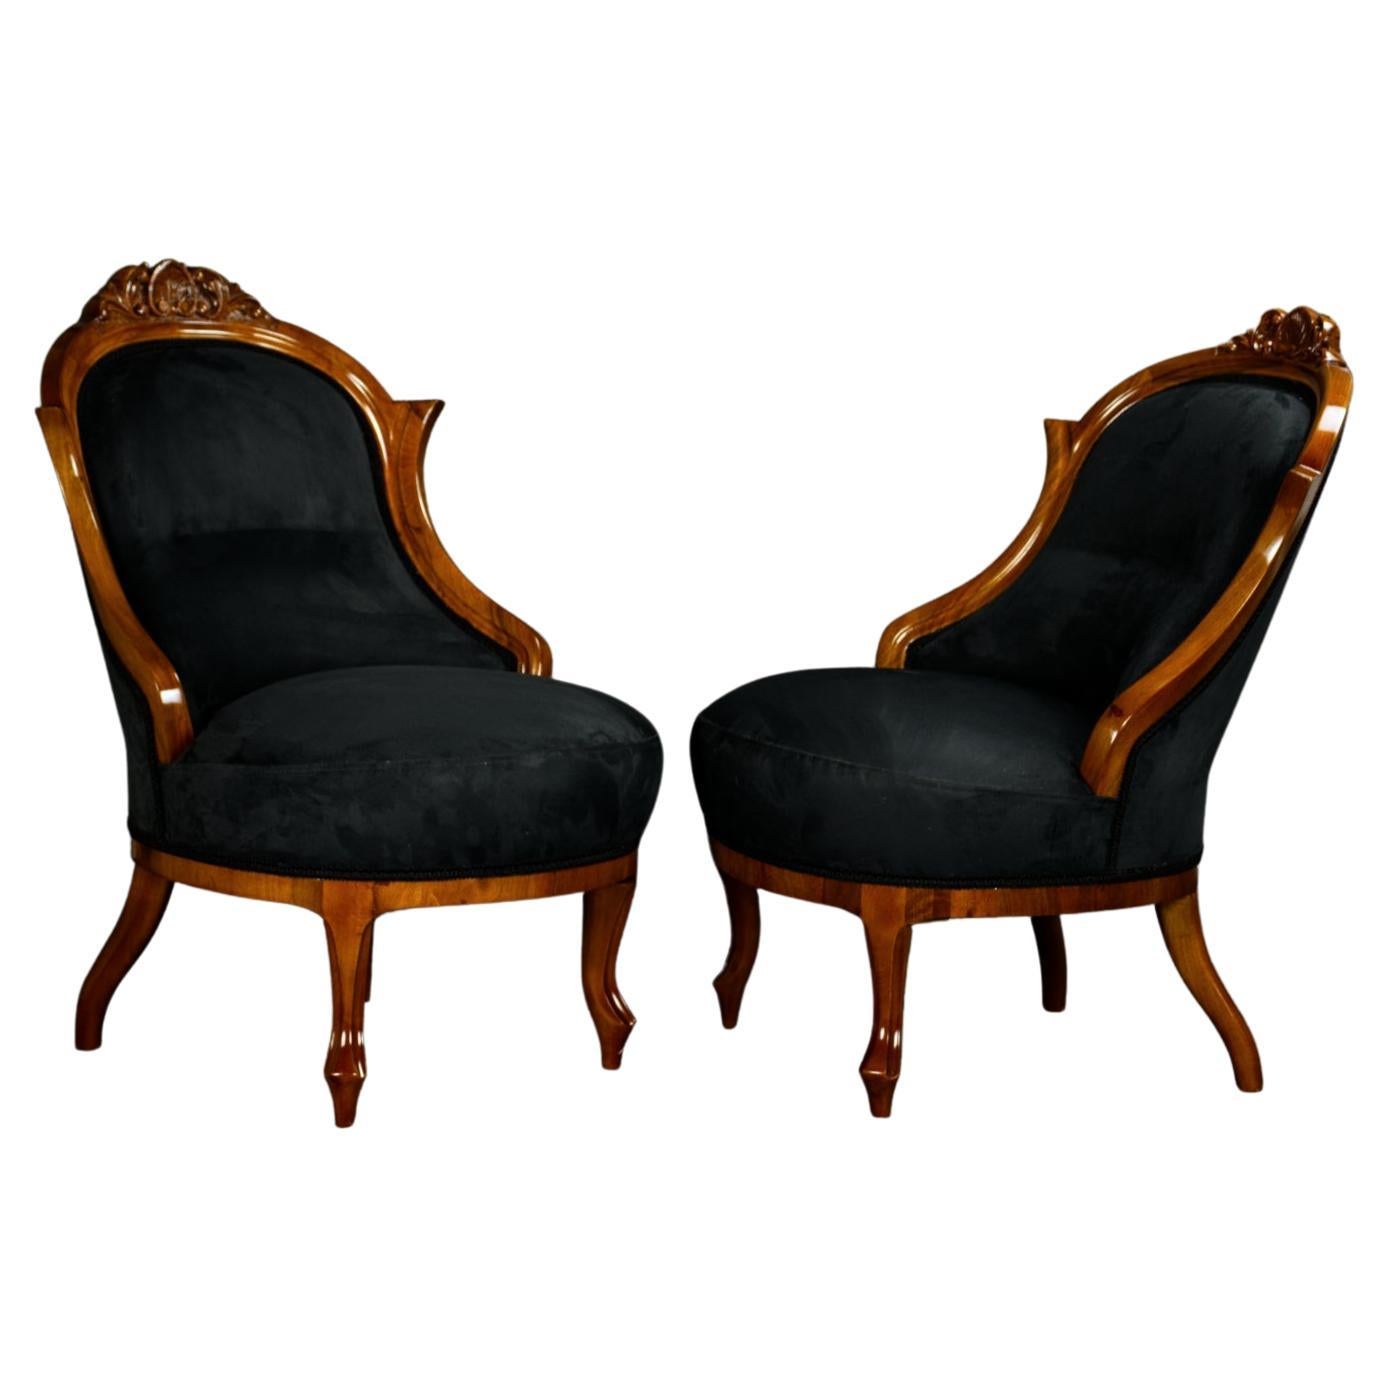 Paire de fauteuils Biedermeier noirs entièrement restaurés du 19ème siècle